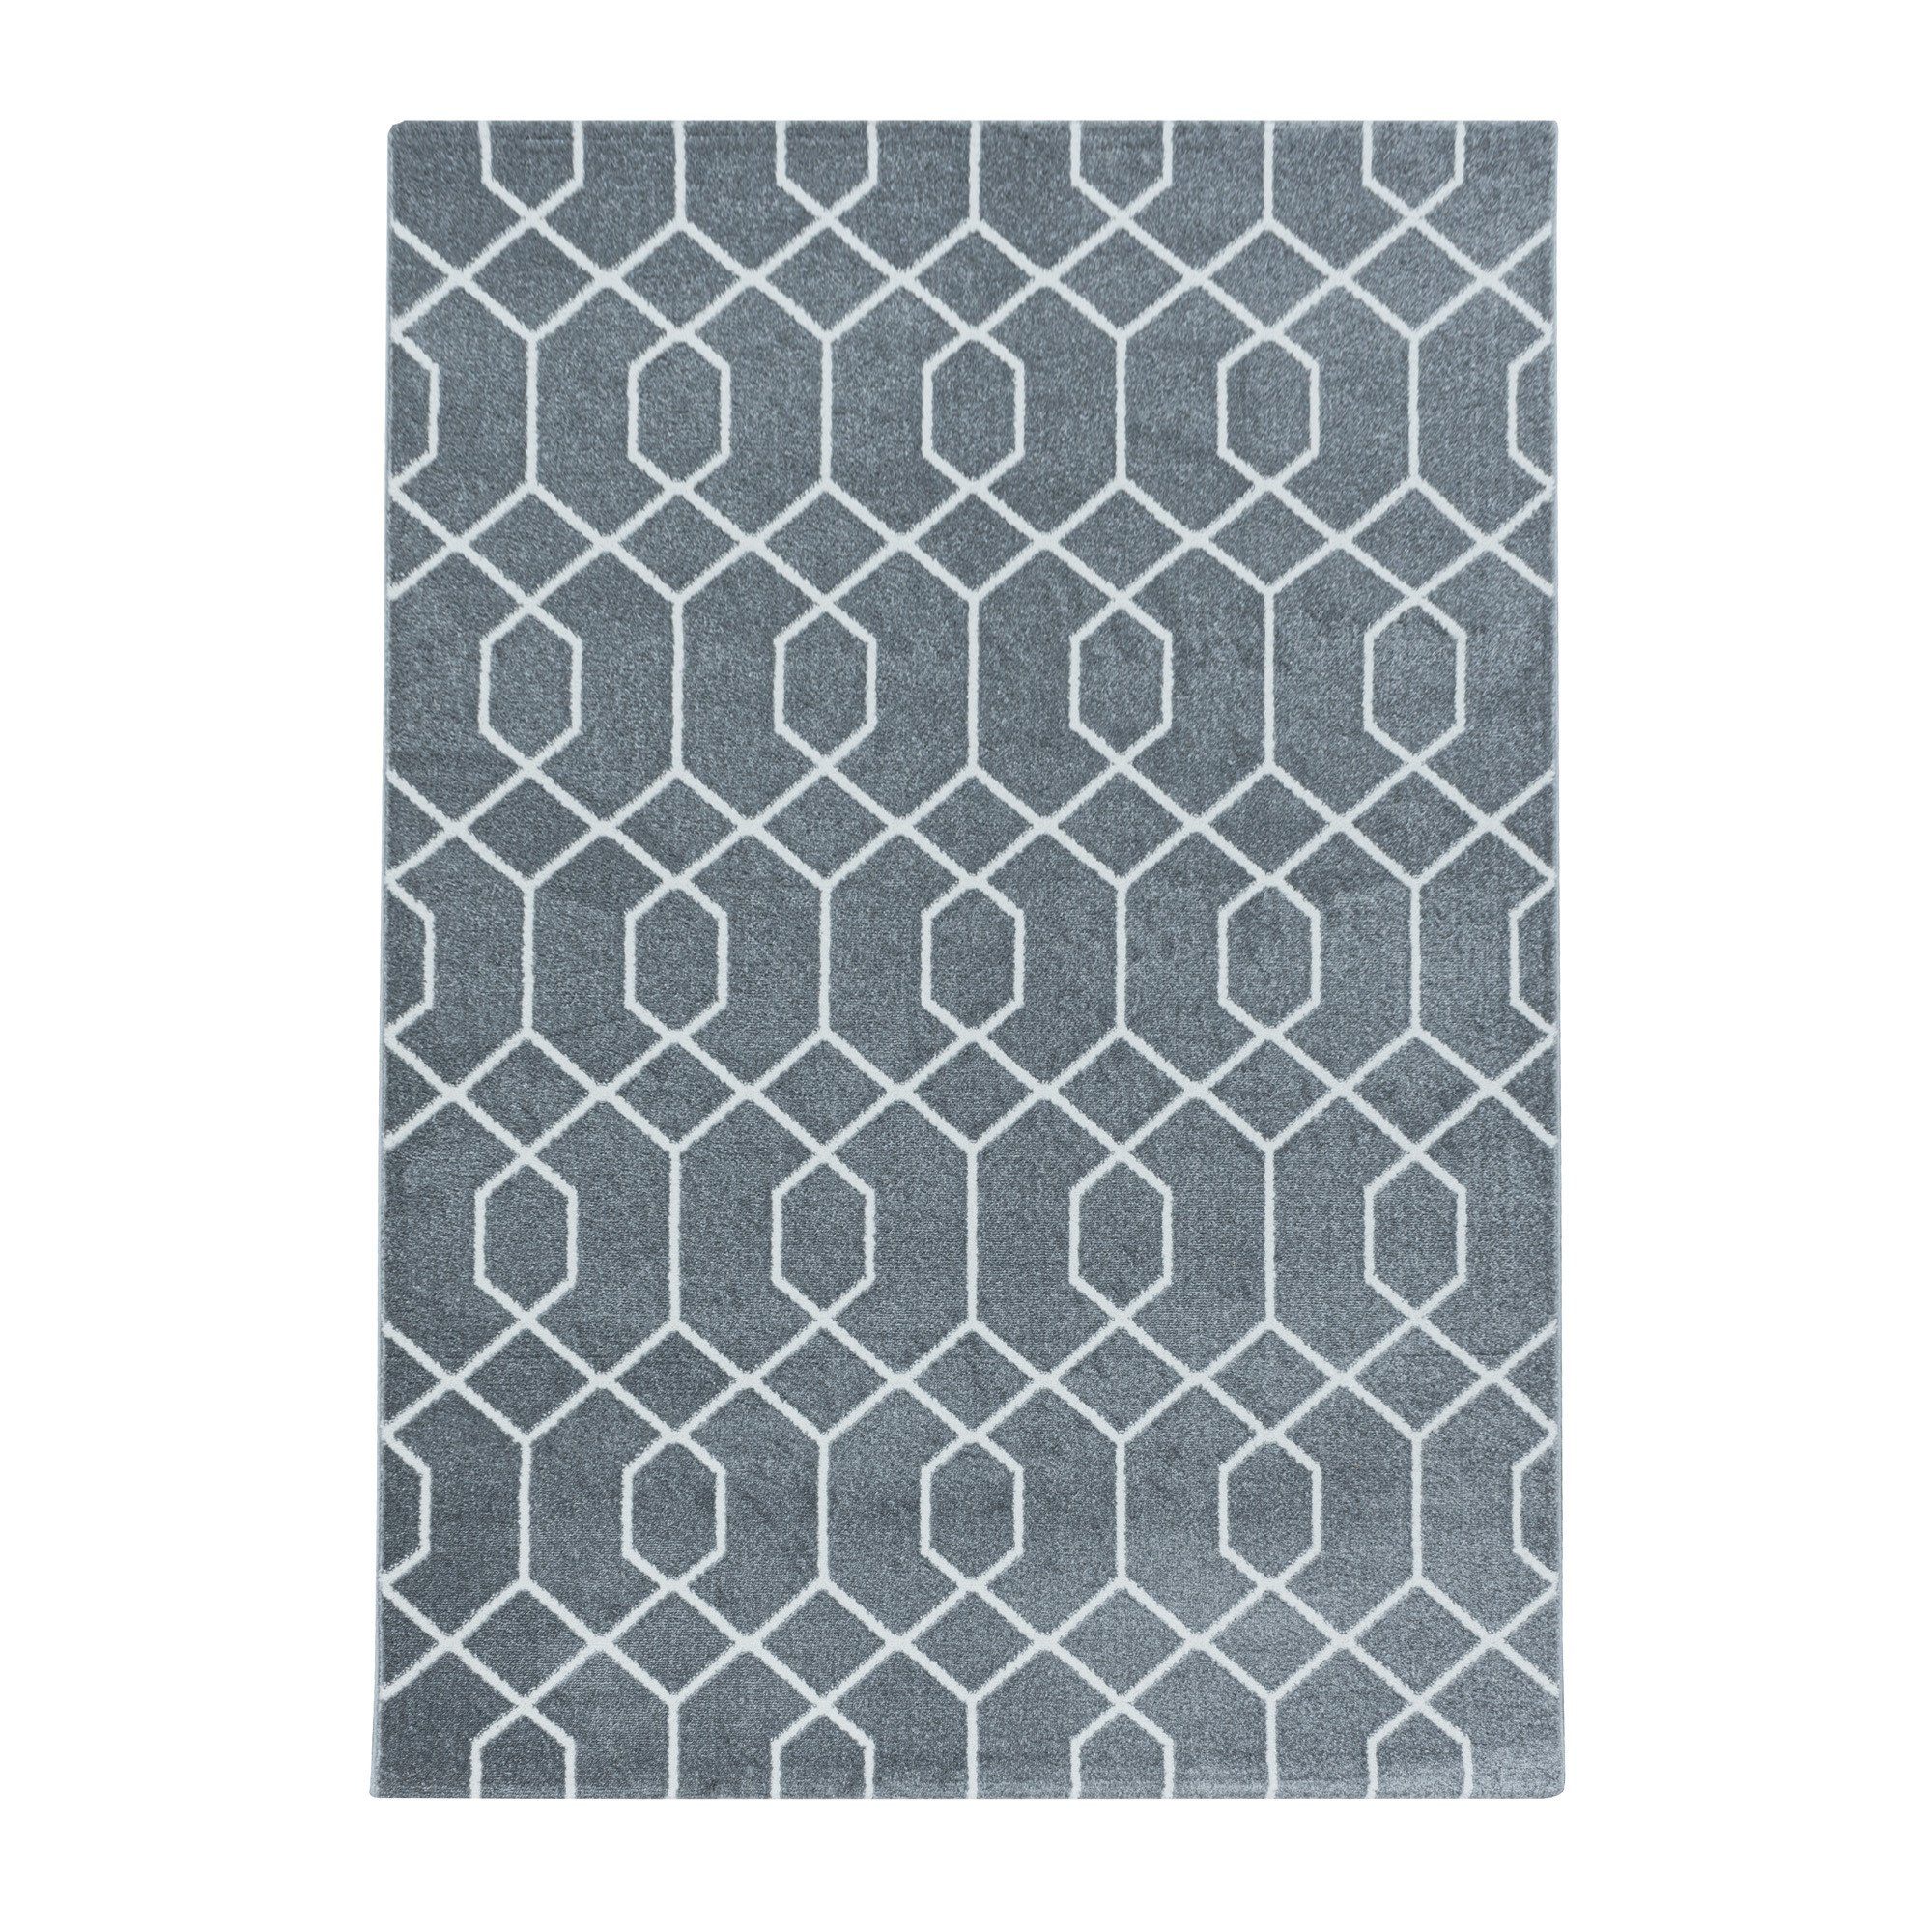 Wohnzimmer, Schlafzimmer Miovani Kurzflorteppich Flachflorteppich Muster Designteppich Grau